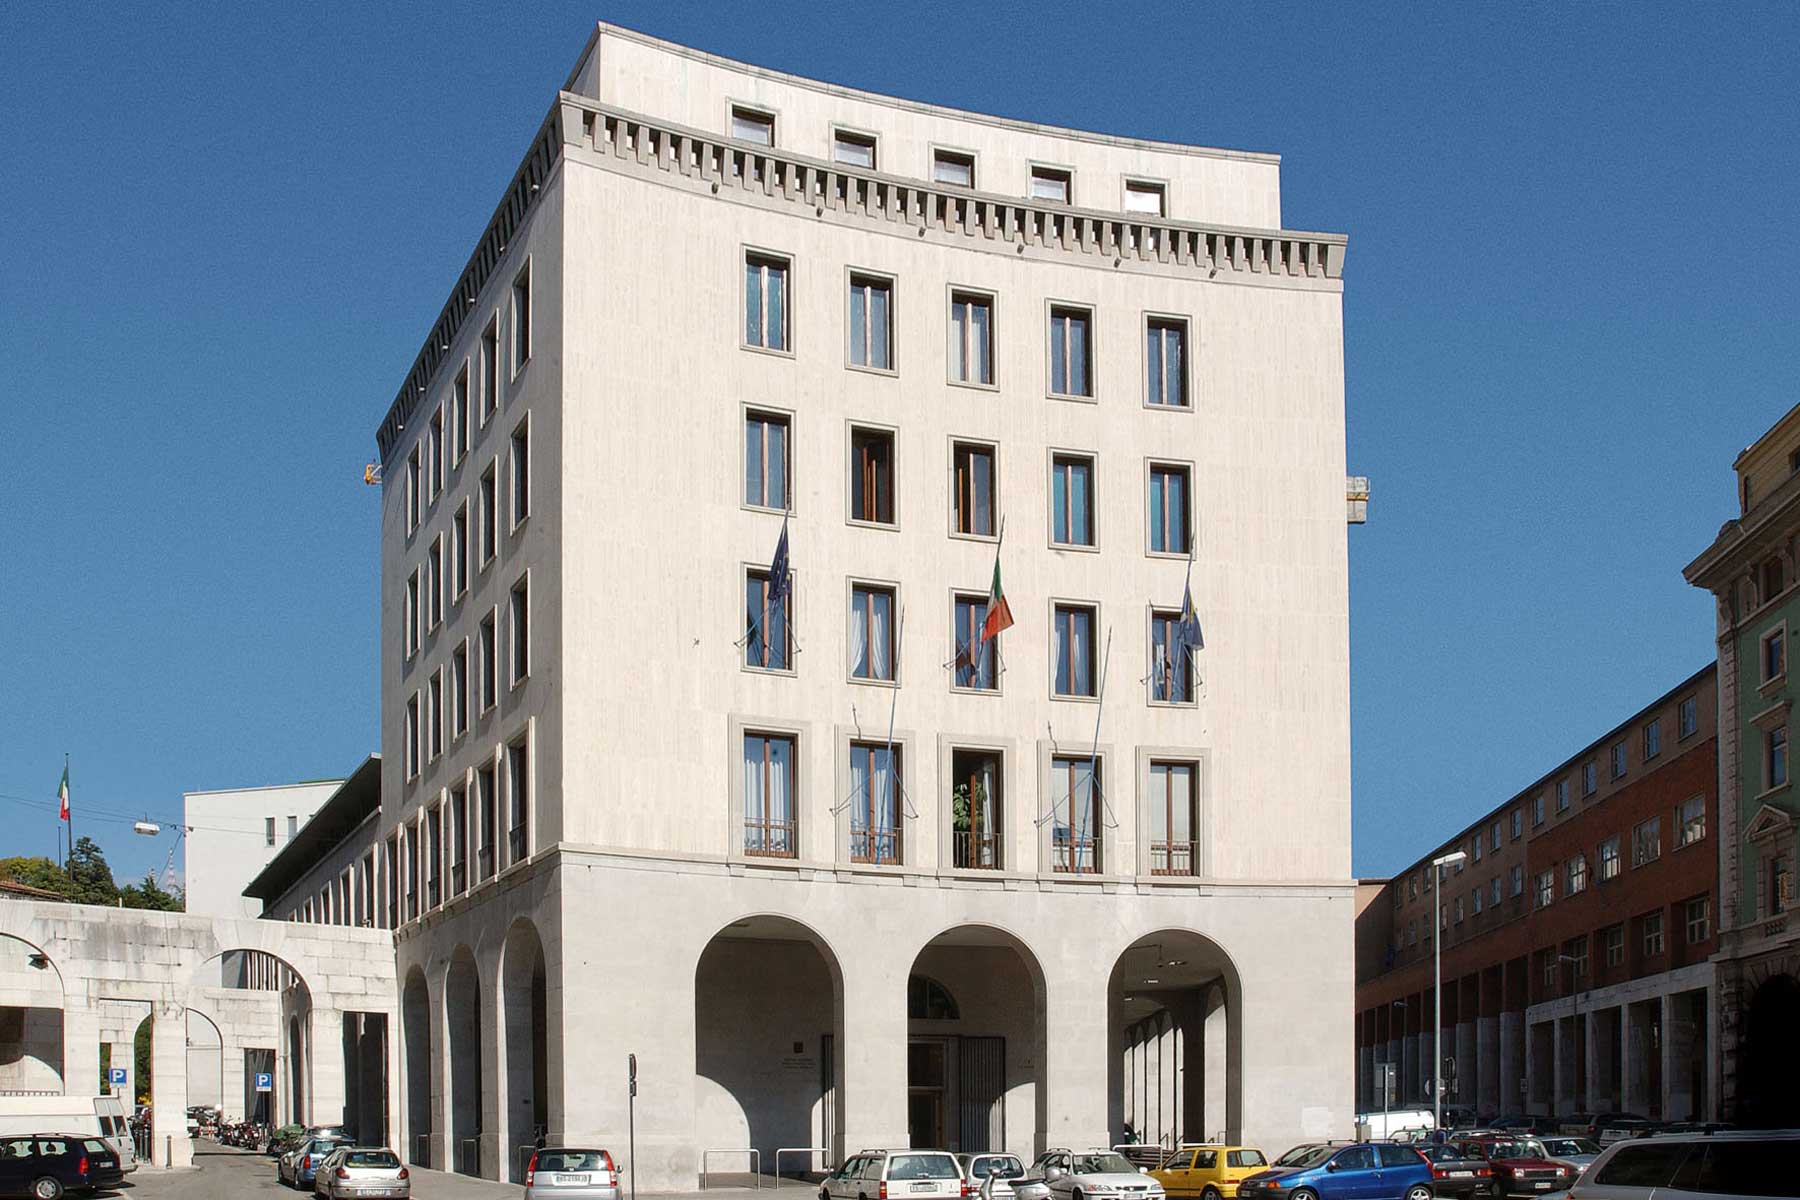 La sede del Consiglio regionale in piazza Oberdan a Trieste